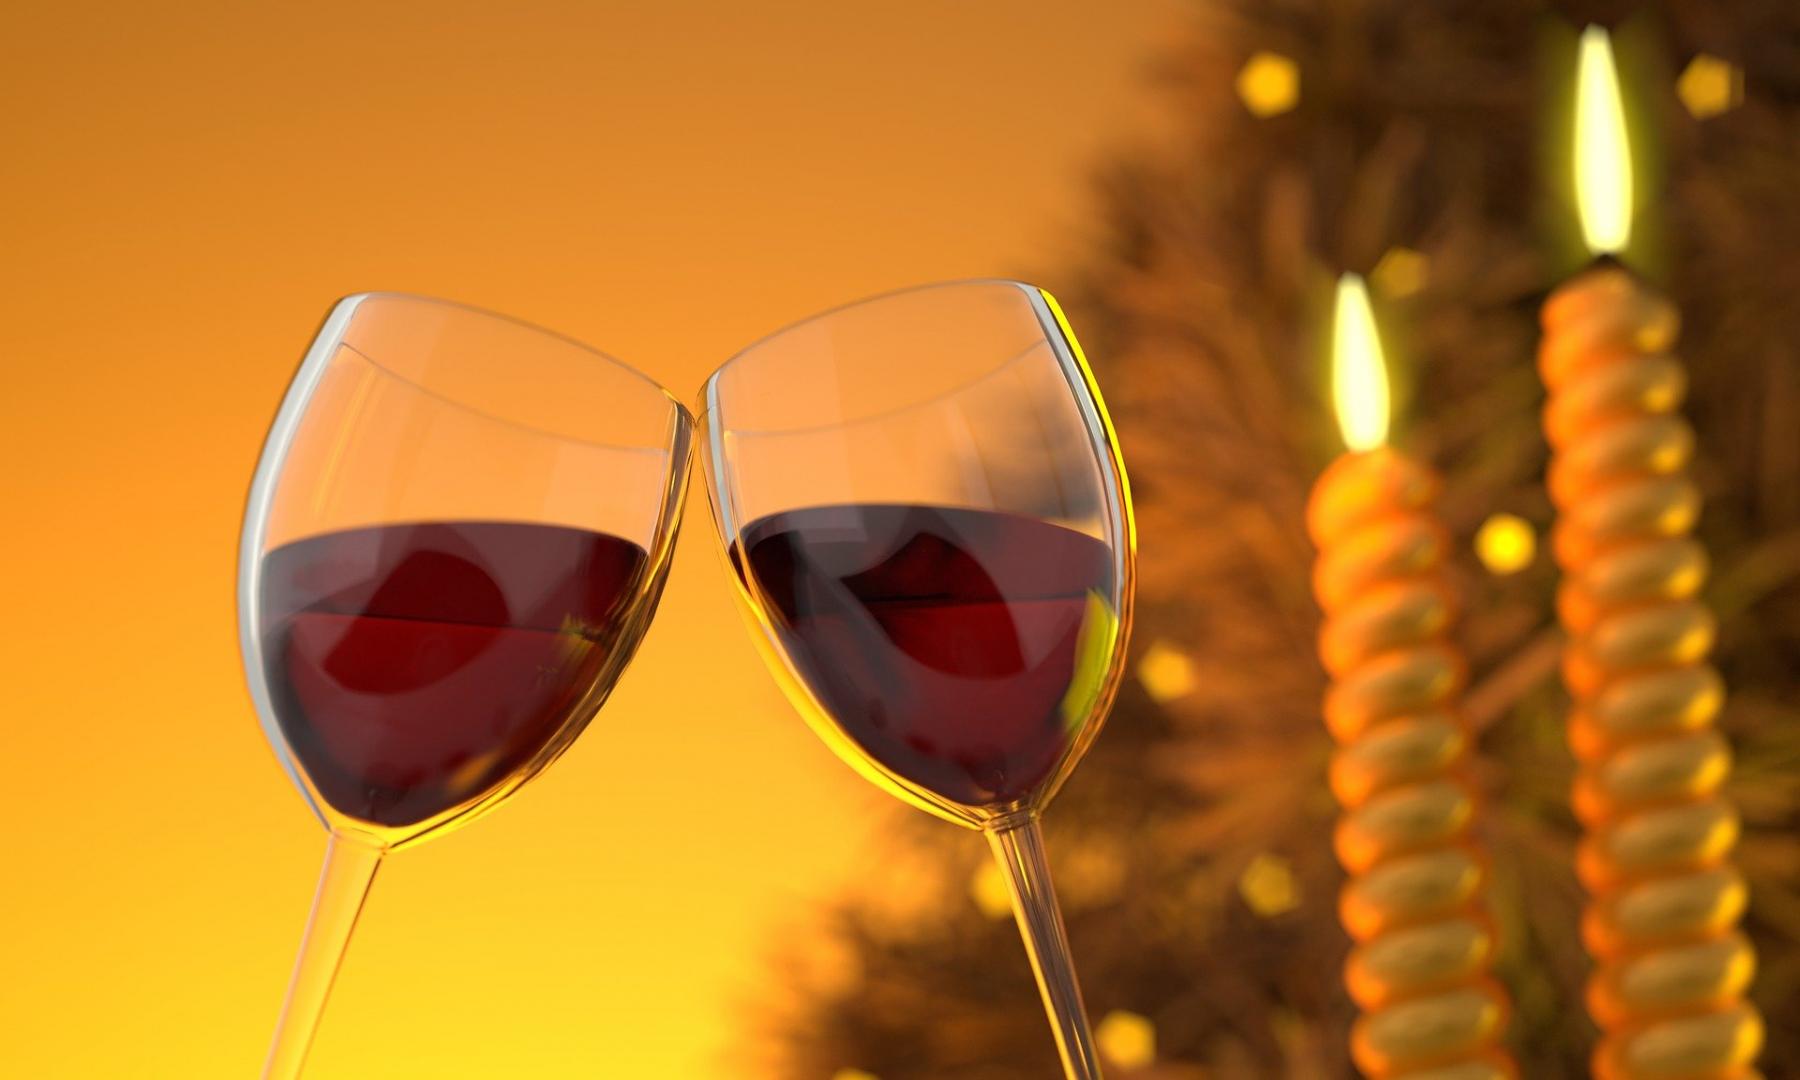 Ein Glas Wein oder Bier beim ersten Date ist durchaus o.k., wenn beide Alkohol trinken.